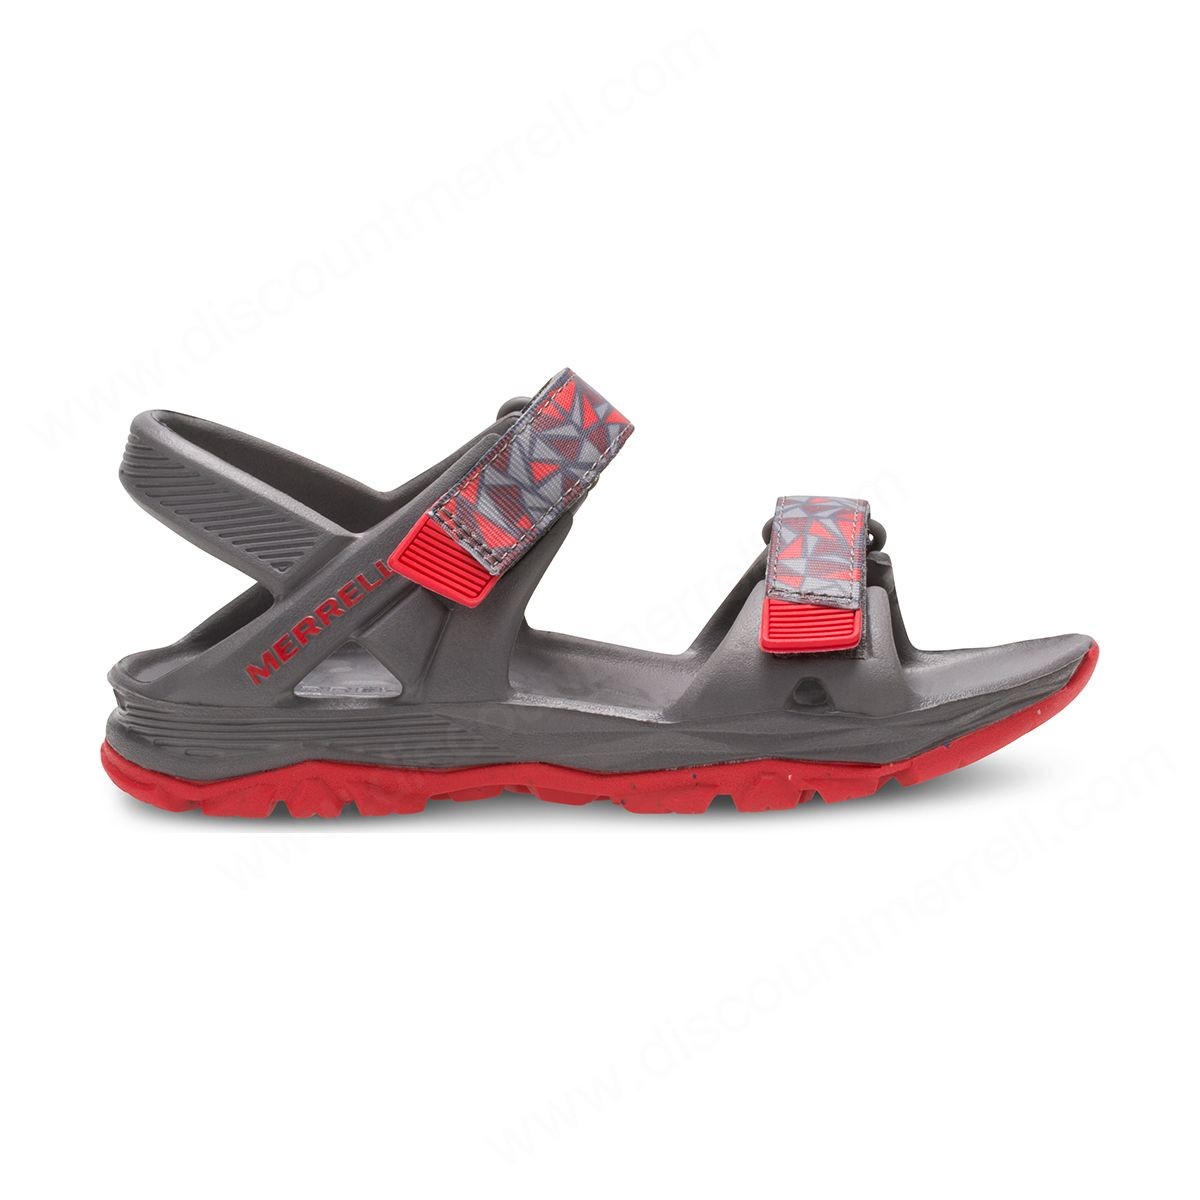 Merrell Little Kid's Hydro Drift Sandal Grey/red - -2